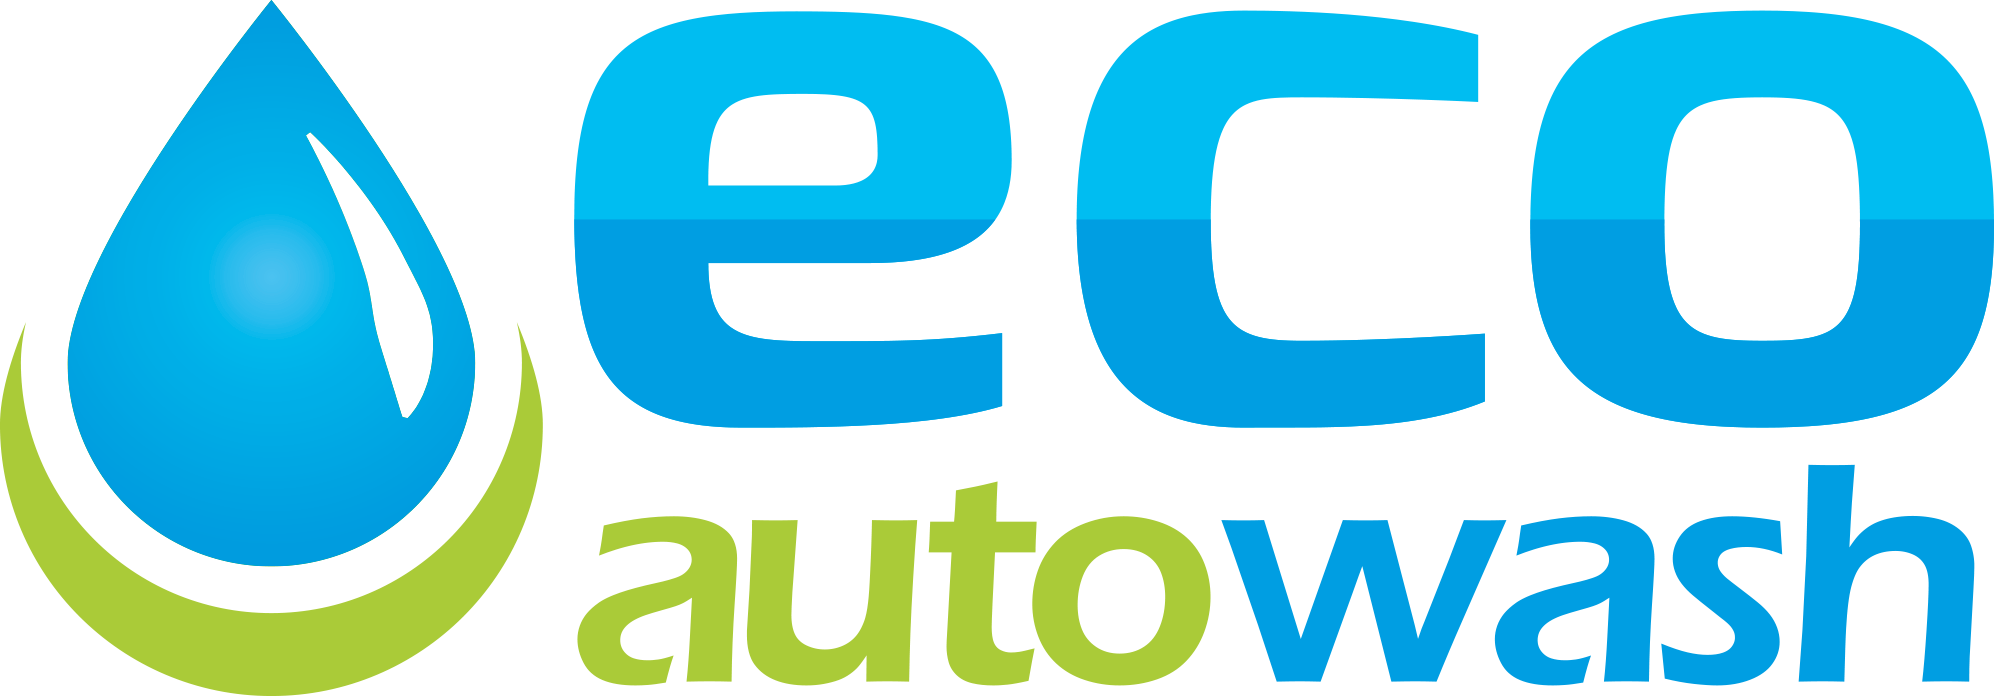 logo_eco_auto_wash_2000w